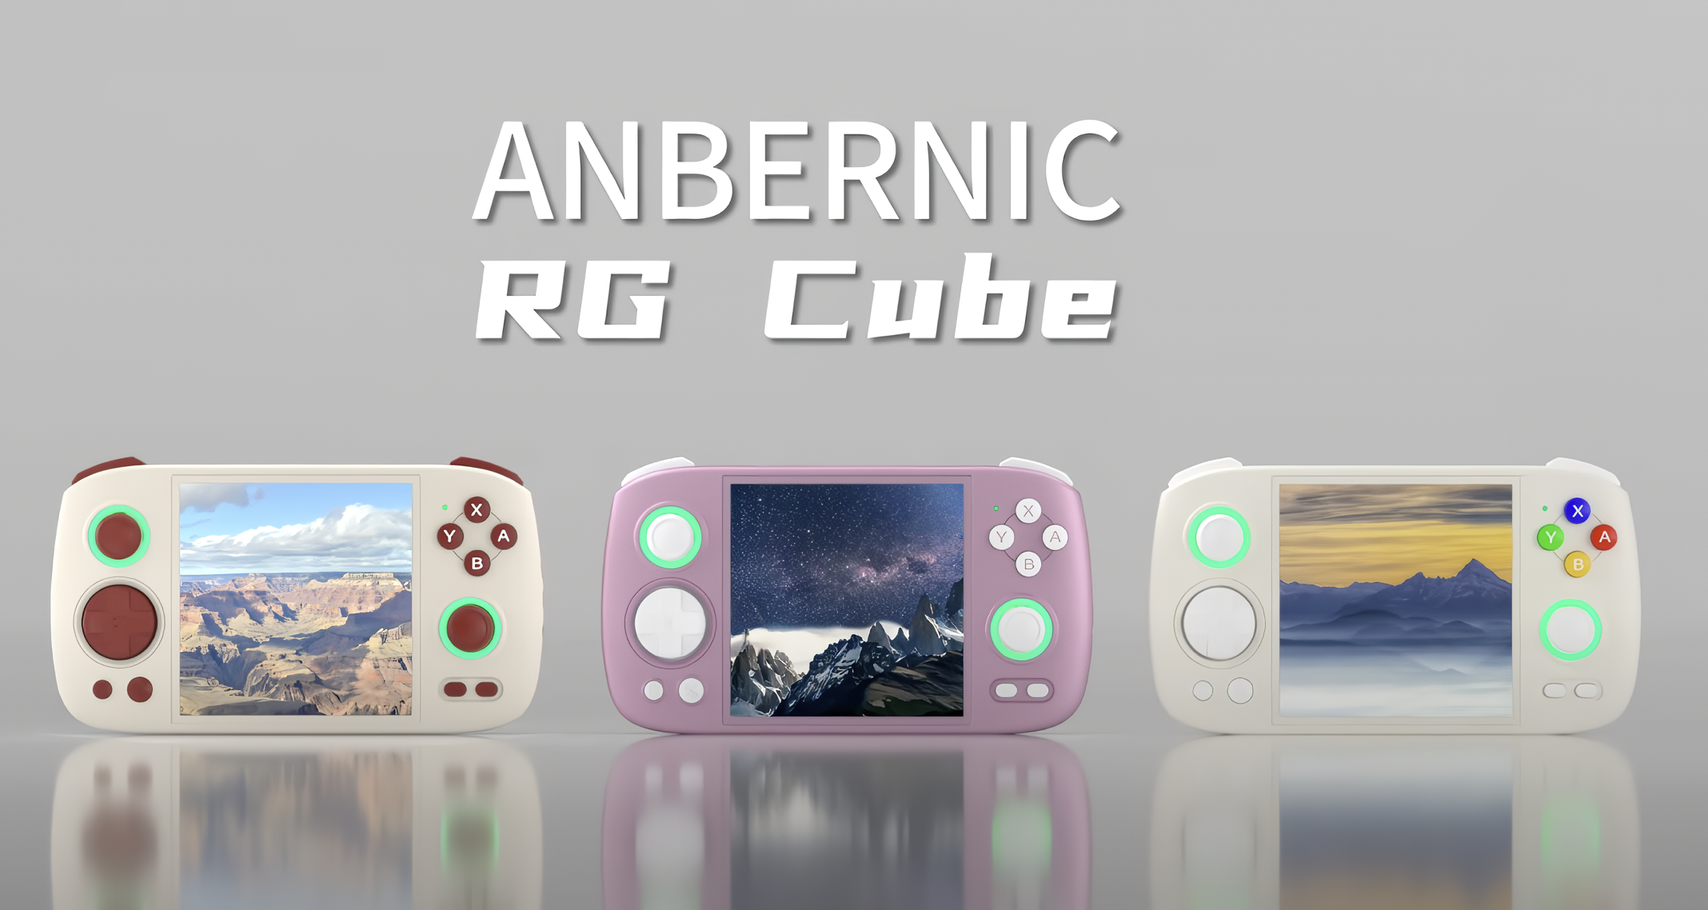 De Anbernic RG Cube spelconsole voor liefhebbers van retro gaming is onthuld